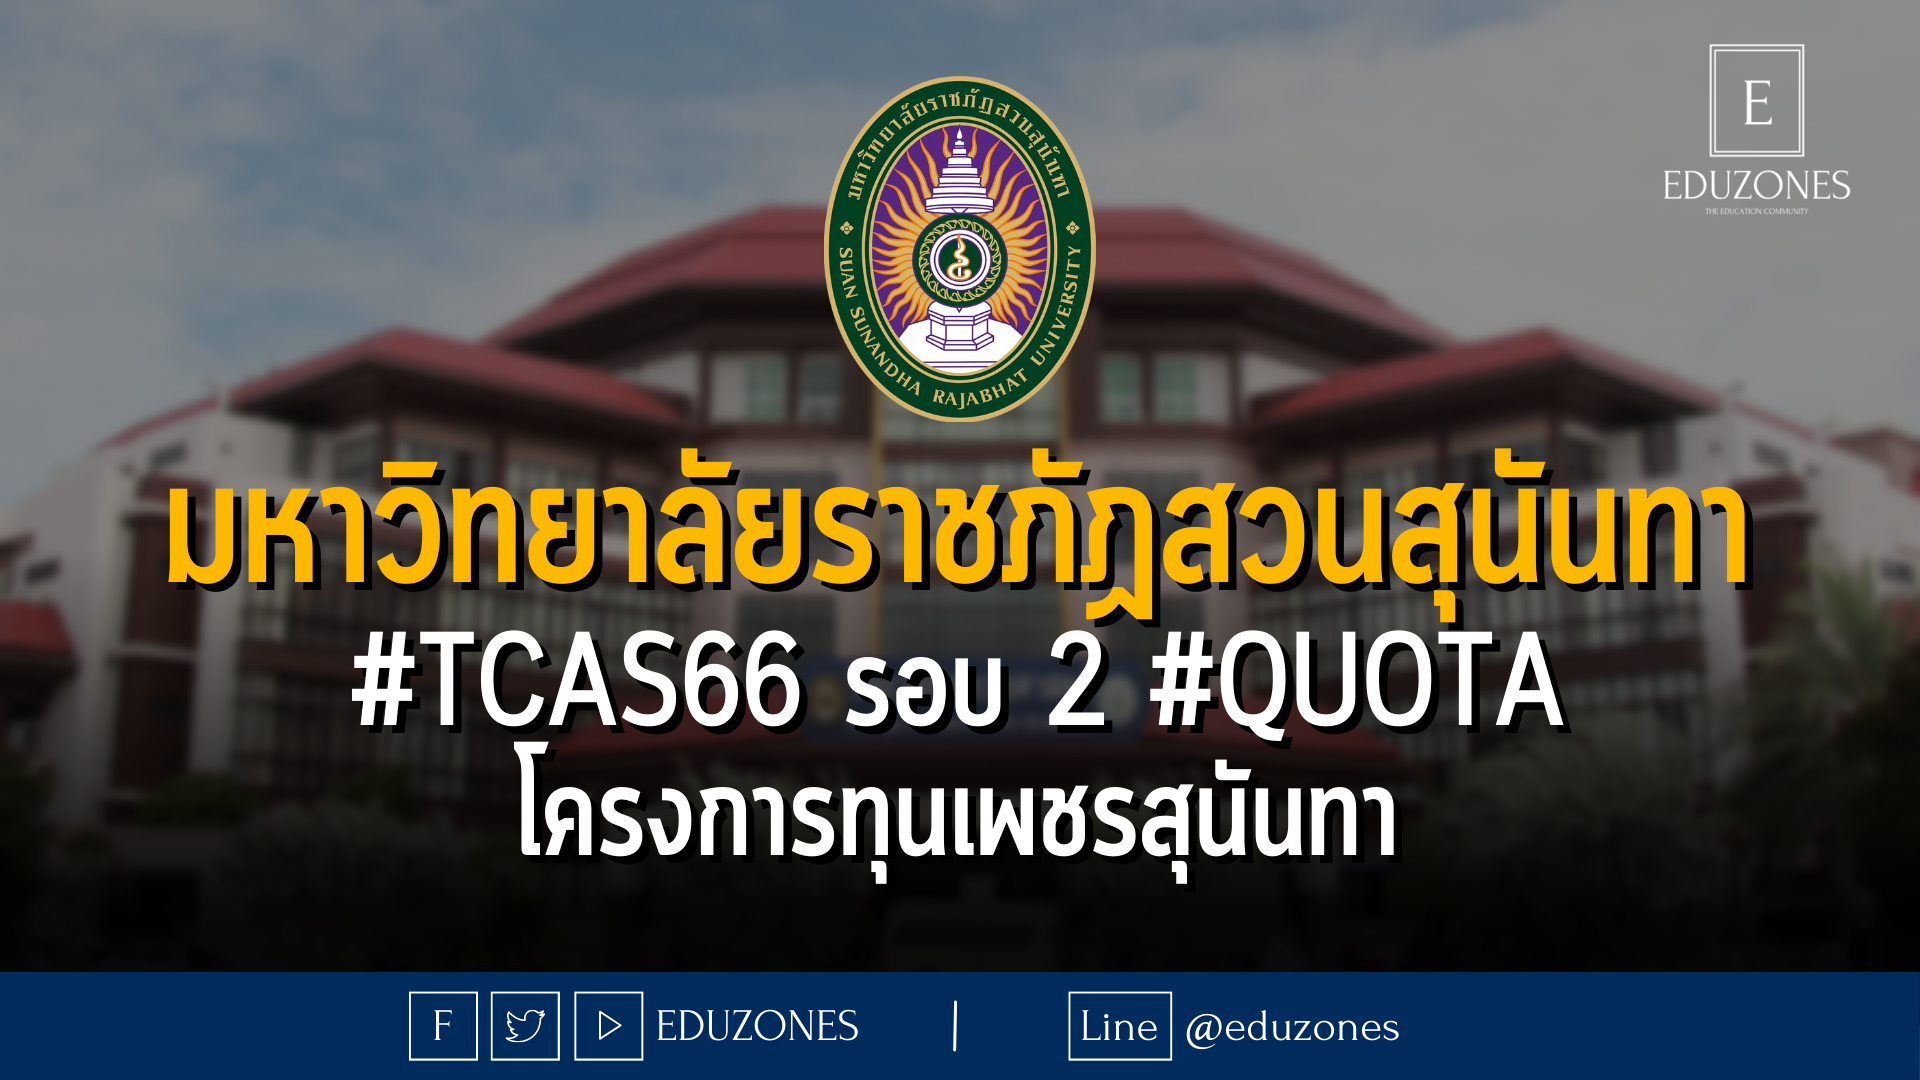 มหาวิทยาลัยราชภัฏสวนสุนันทา #TCAS66 รอบ 2 #QUOTA โครงการทุนเพชรสุนันทา - หมดเขต 30 มีนาคม 2566